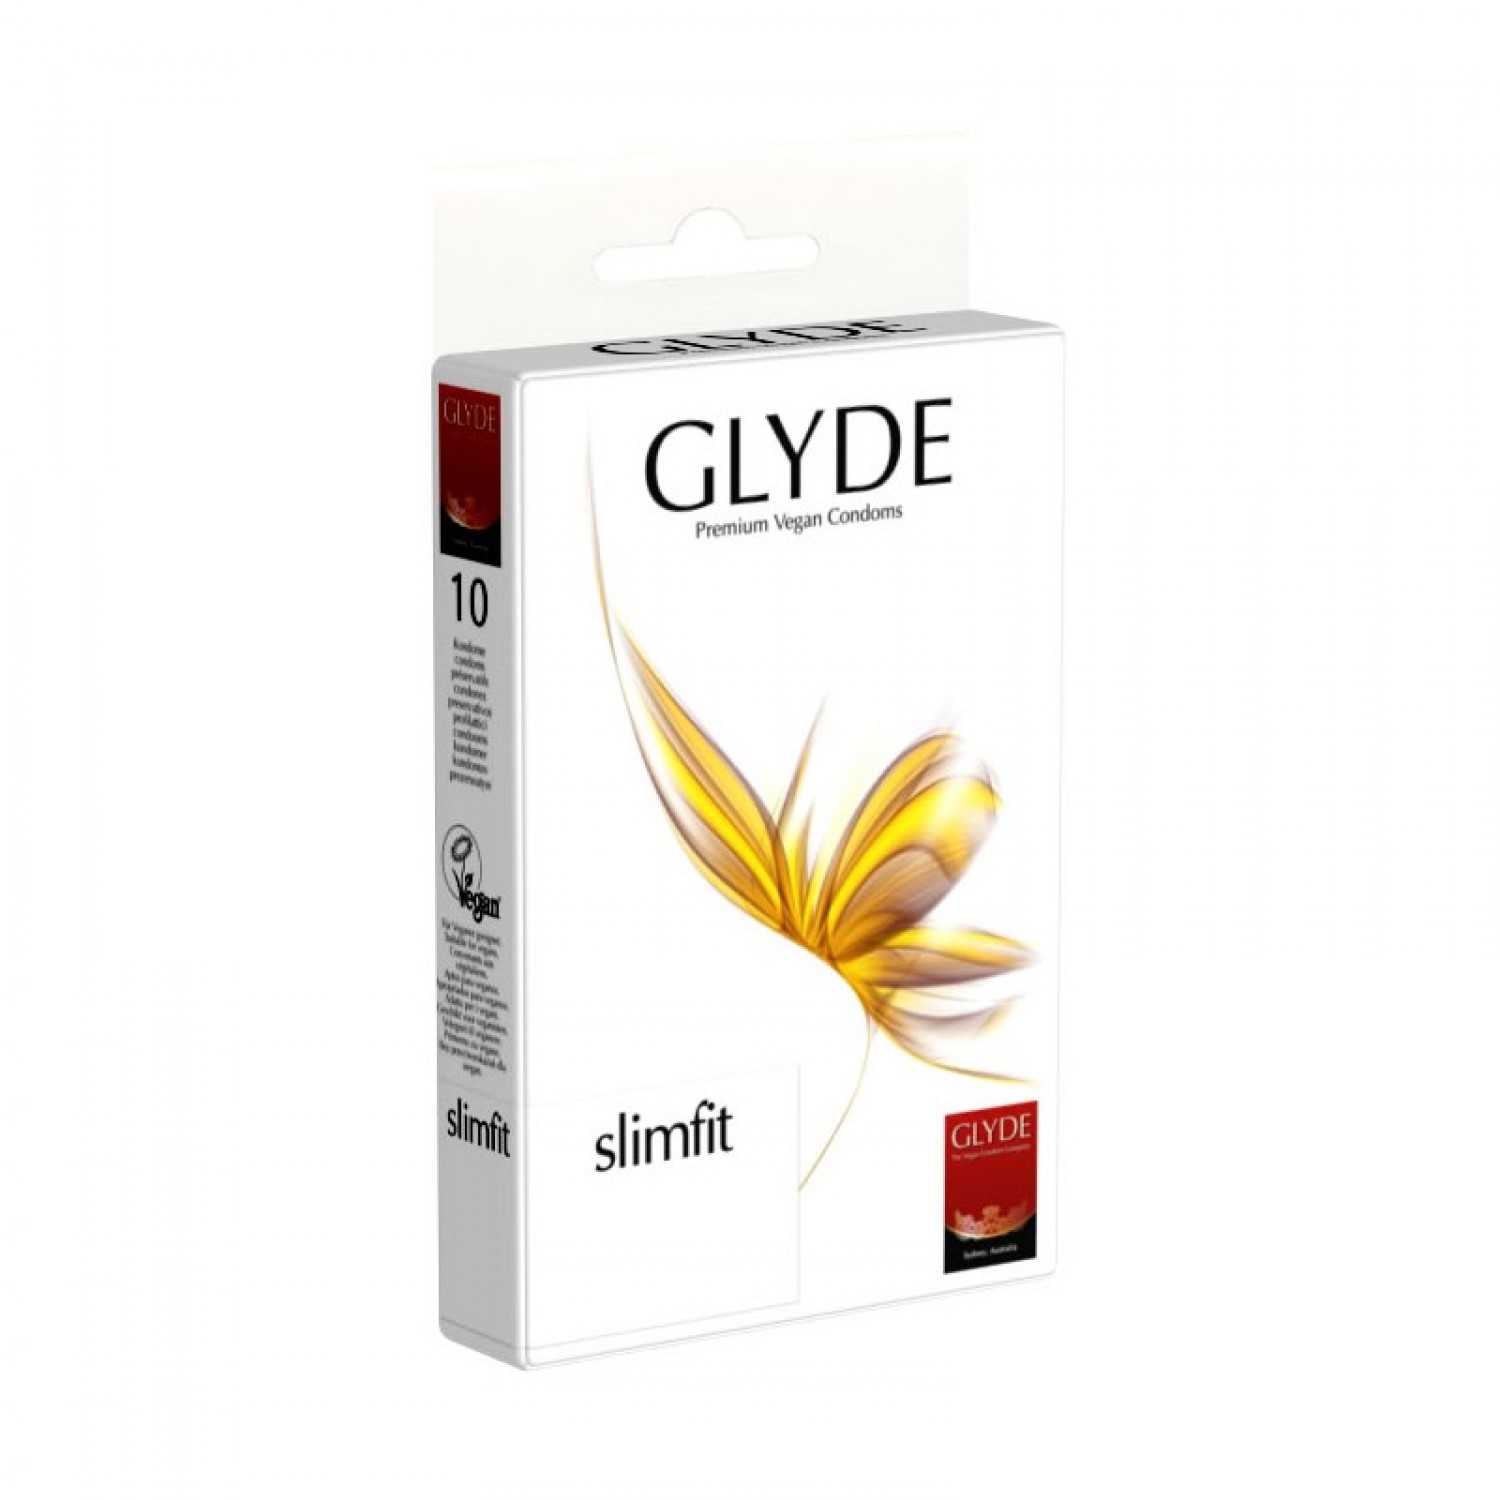 Vegan Condoms Slimfit of Natural Rubber Latex | Glyde